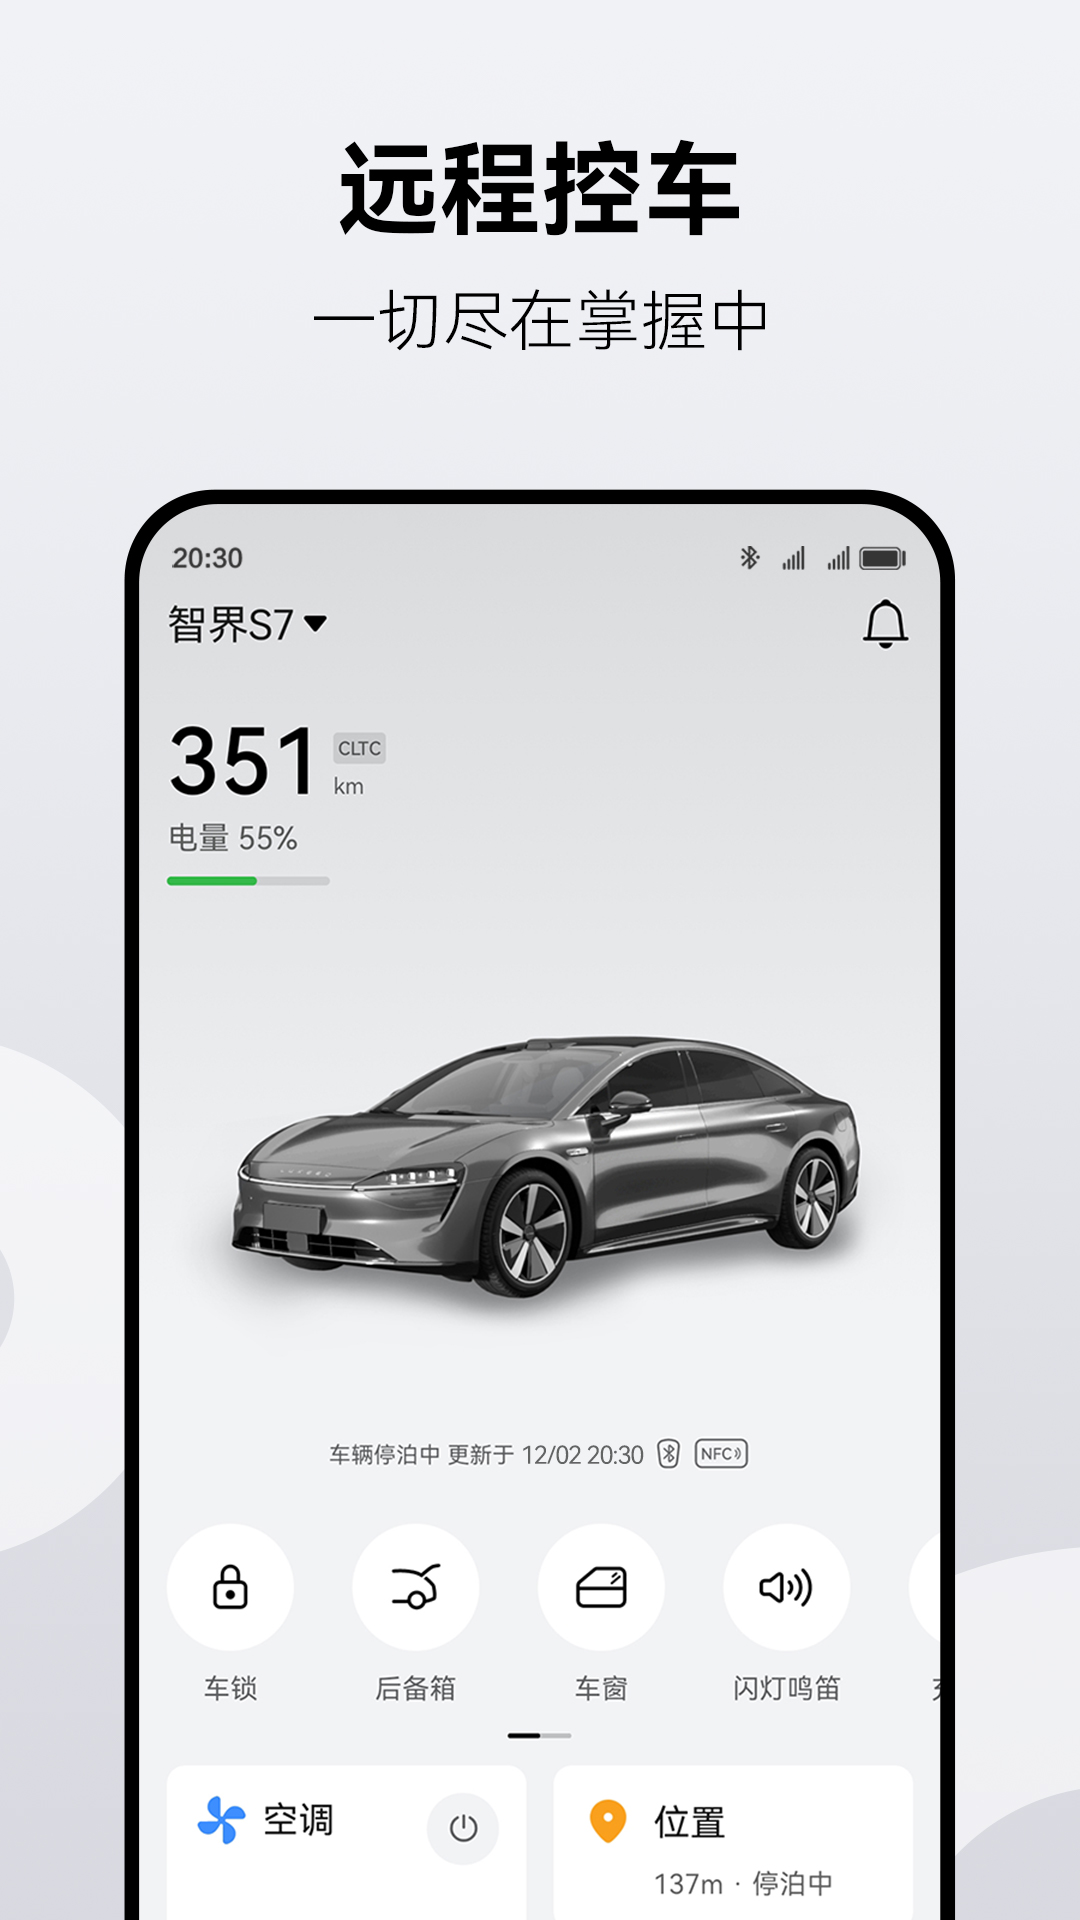 鸿蒙智行最畅销车型 问界新M7大定两个半月破10万-中国金融网